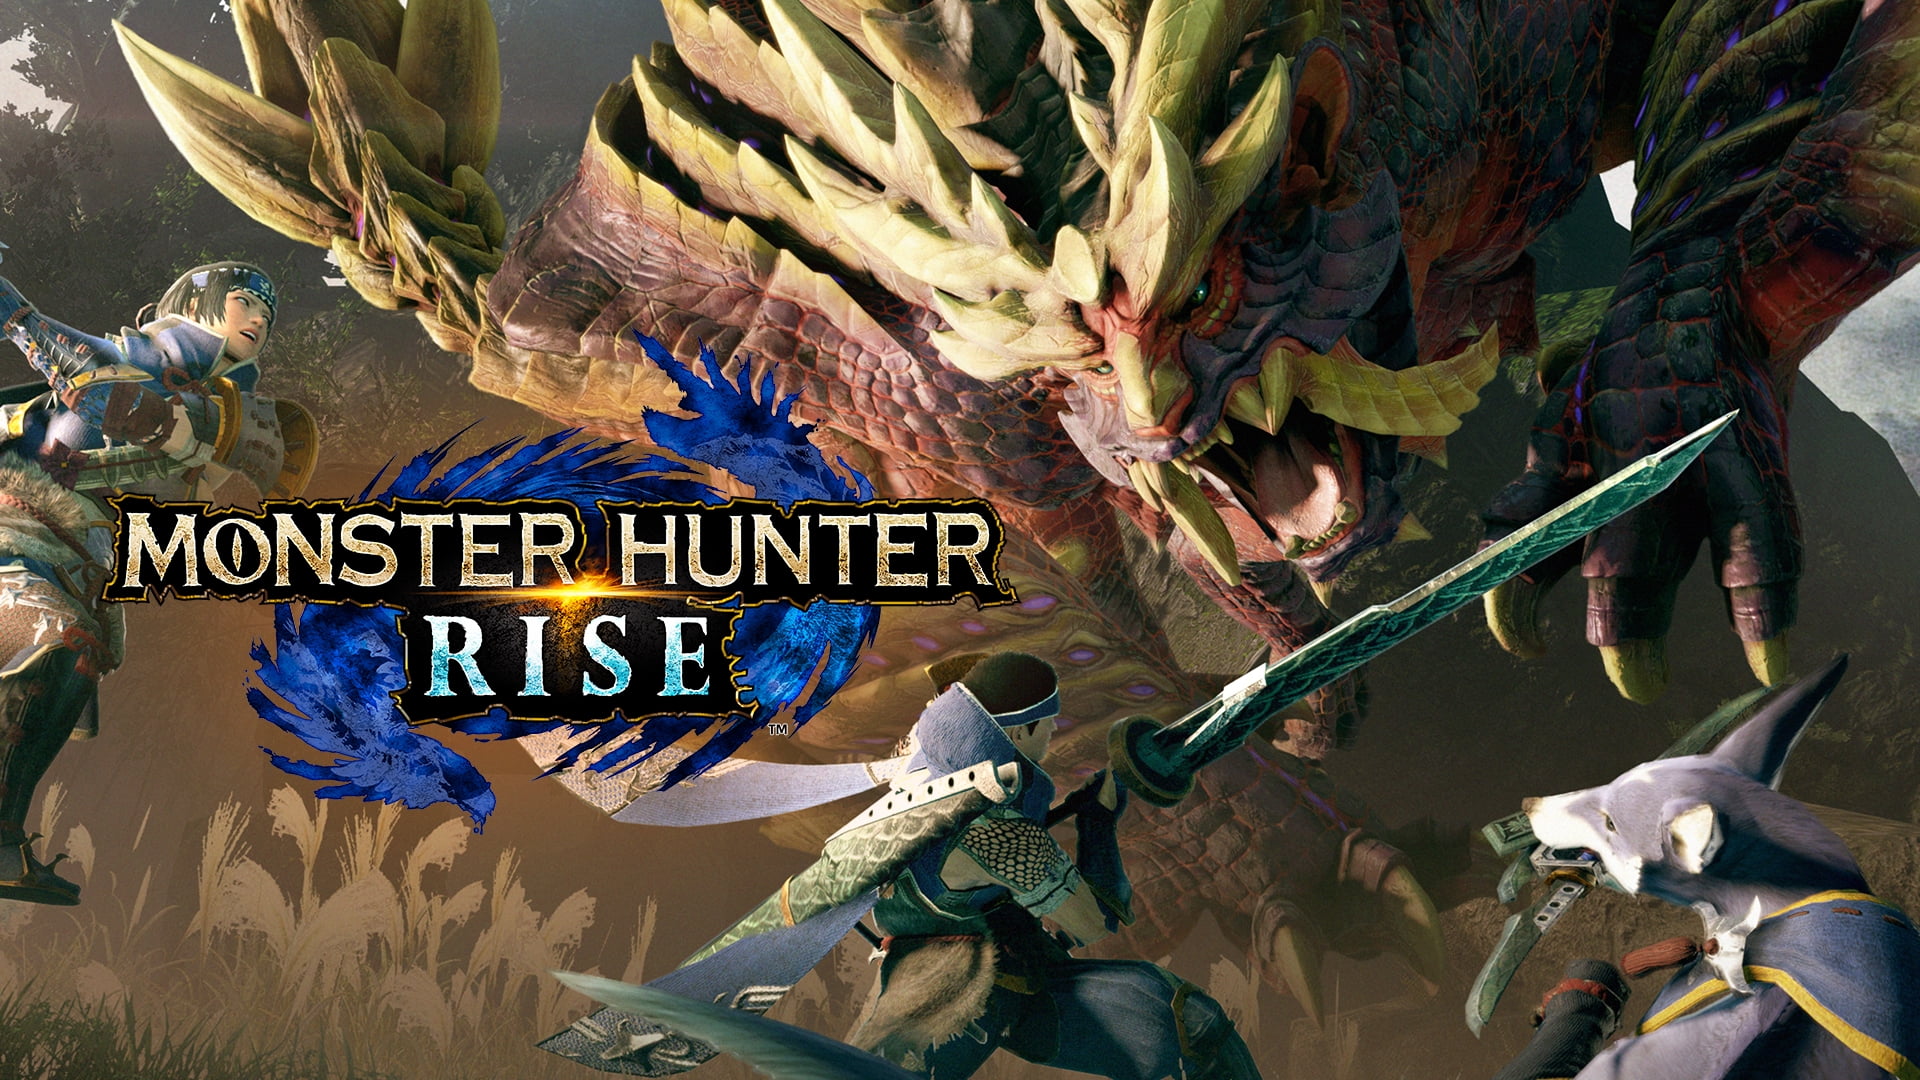 Monster Hunter Rise - Nintendo Switch